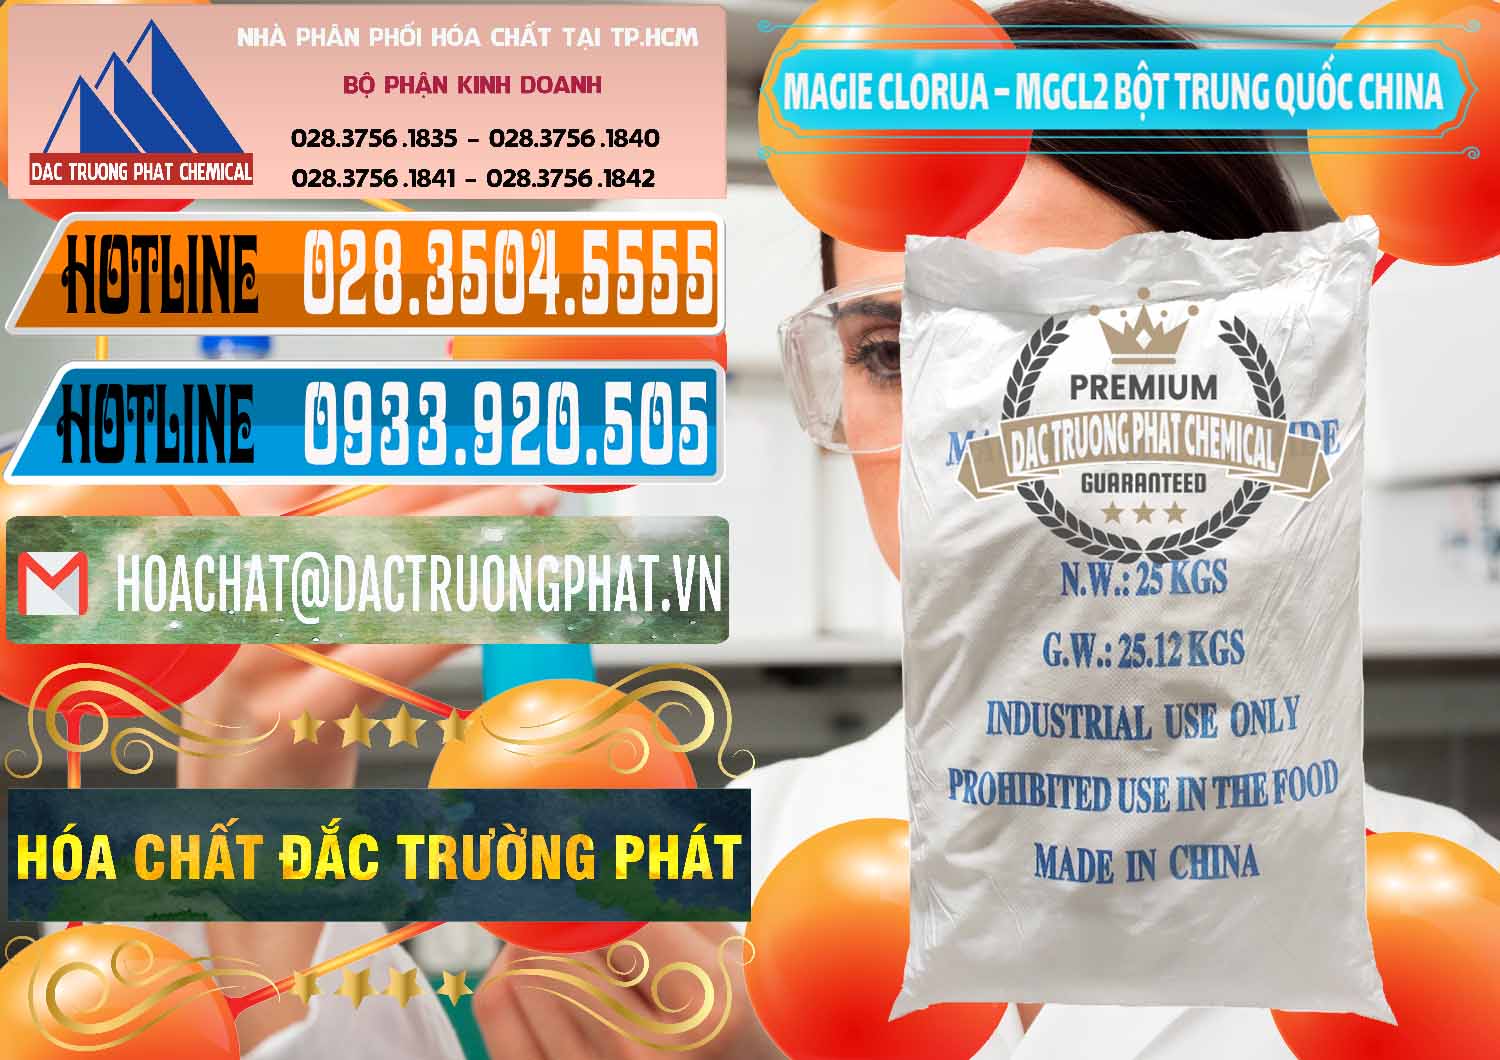 Công ty chuyên cung cấp & bán Magie Clorua – MGCL2 96% Dạng Bột Bao Chữ Xanh Trung Quốc China - 0207 - Bán _ phân phối hóa chất tại TP.HCM - stmp.net